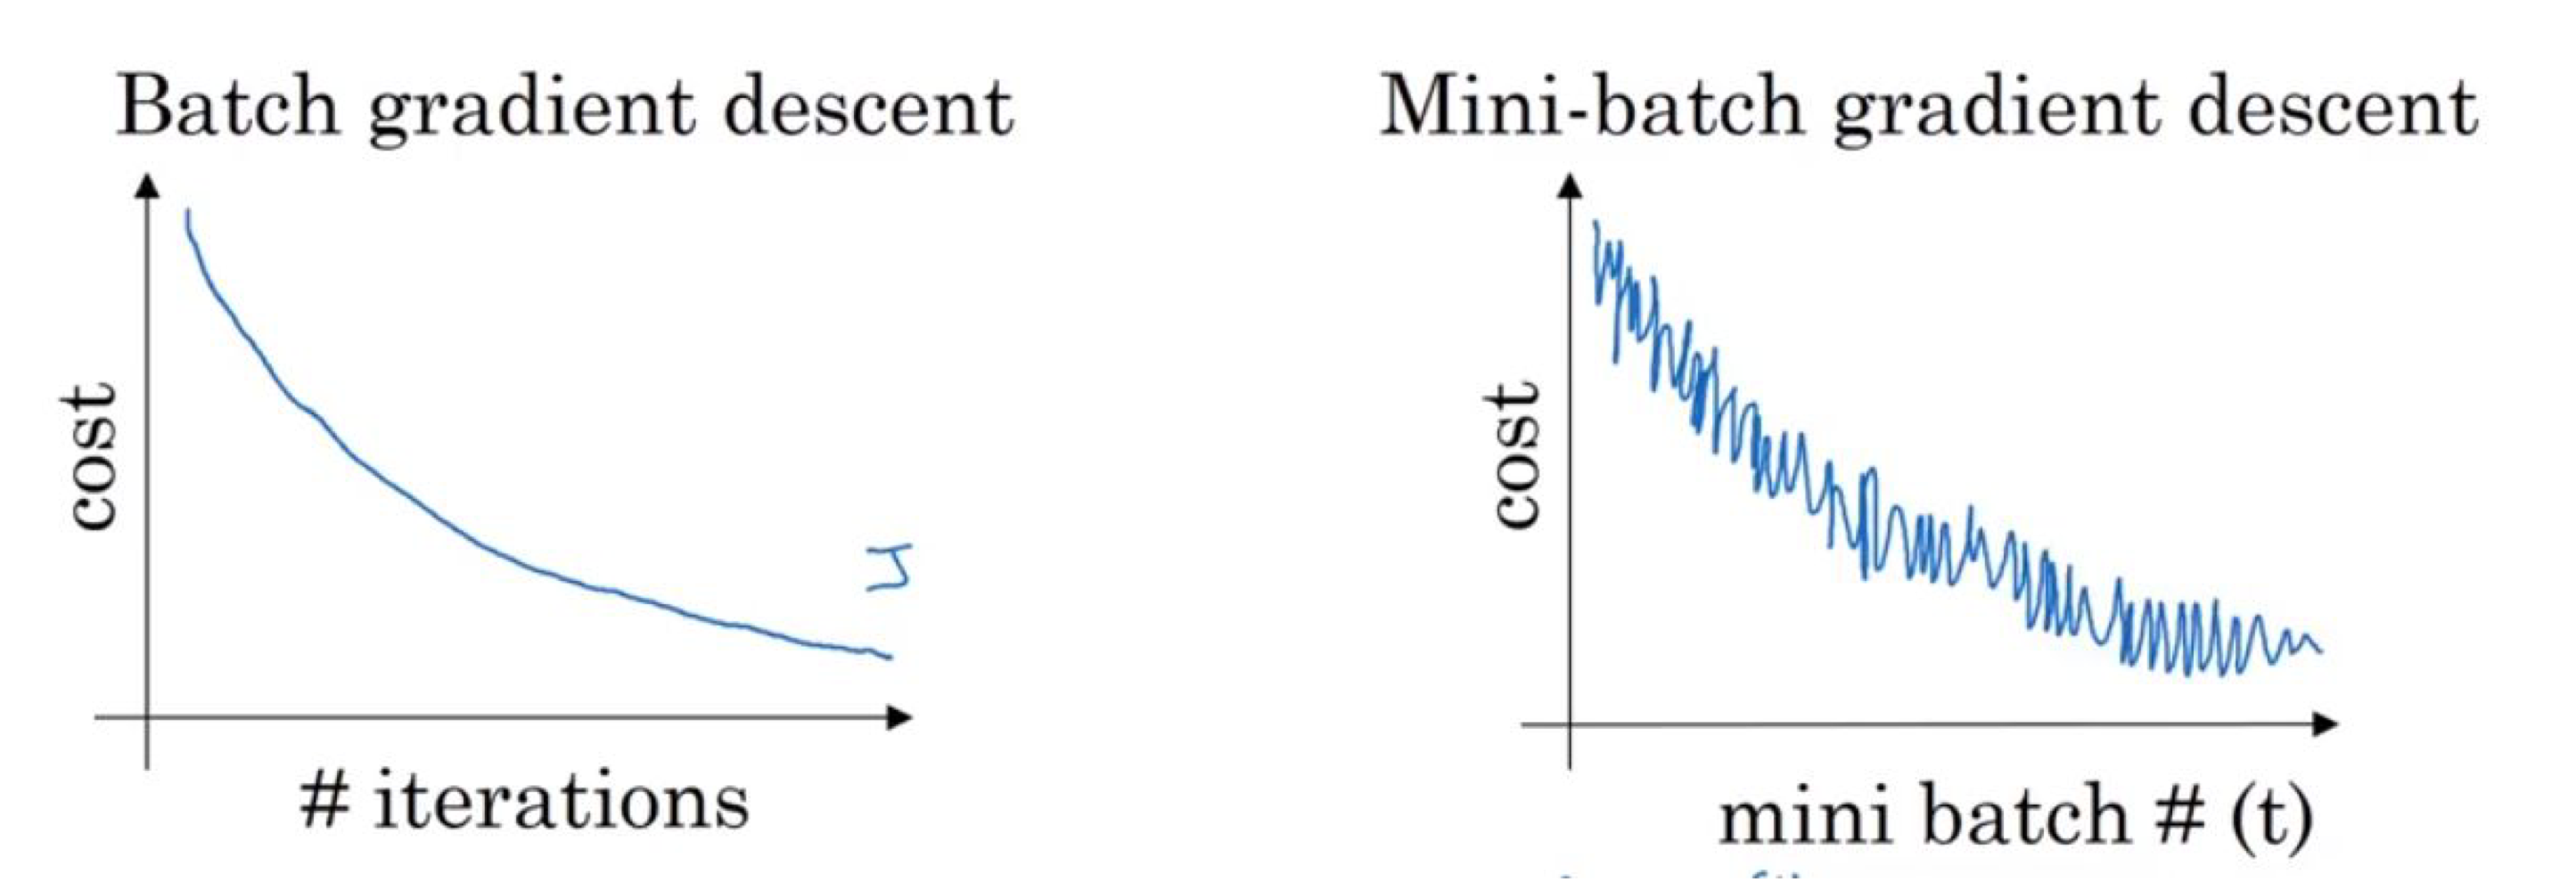 Batch vs Mini-batch Gradient Descent